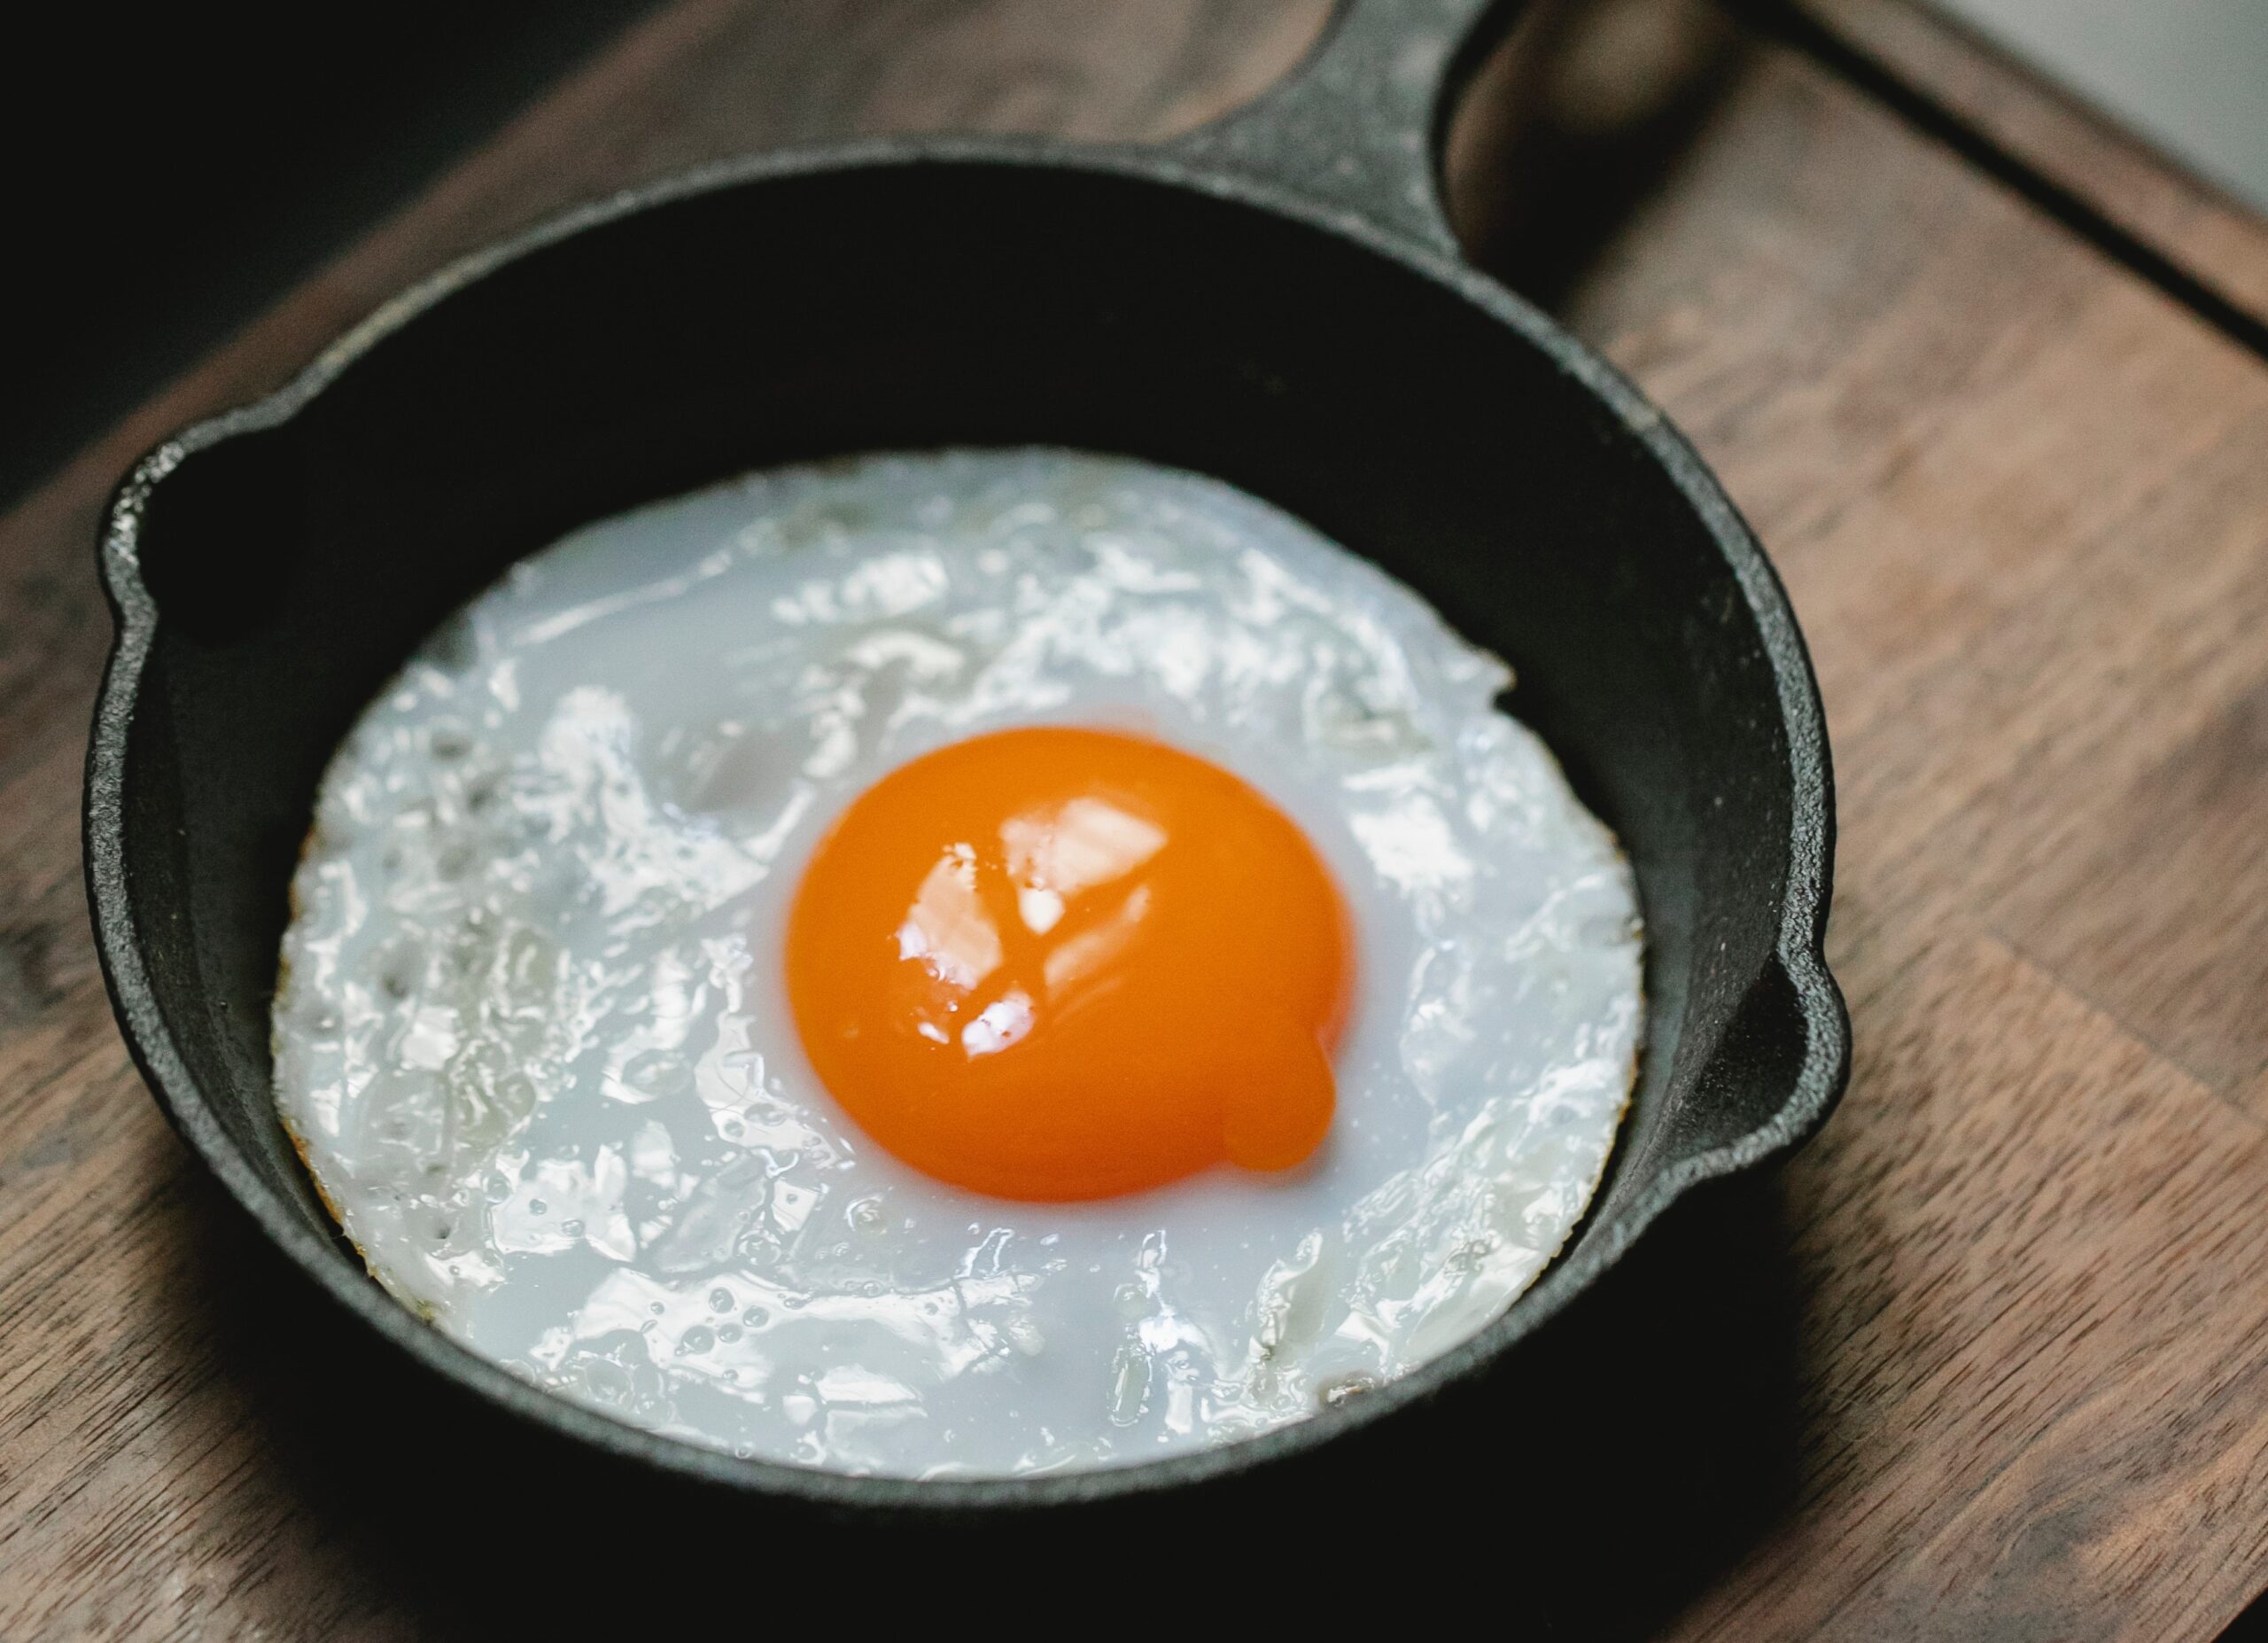 Cara Sehat Mengolah Telur dengan Menggoreng